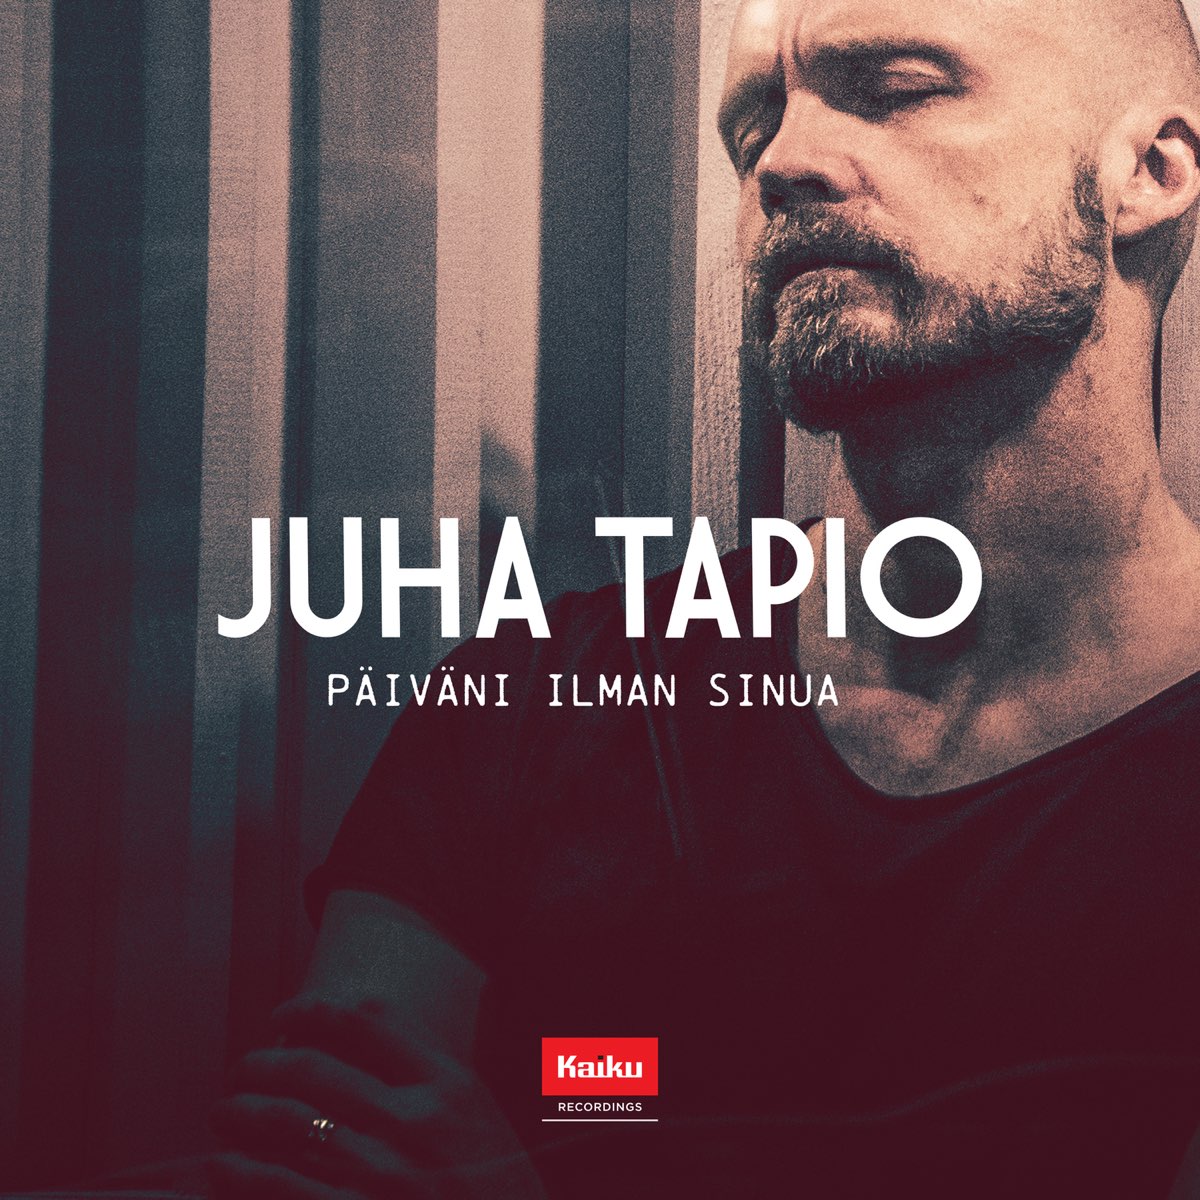 Päiväni ilman sinua (Radio Edit) - Single de Juha Tapio en Apple Music